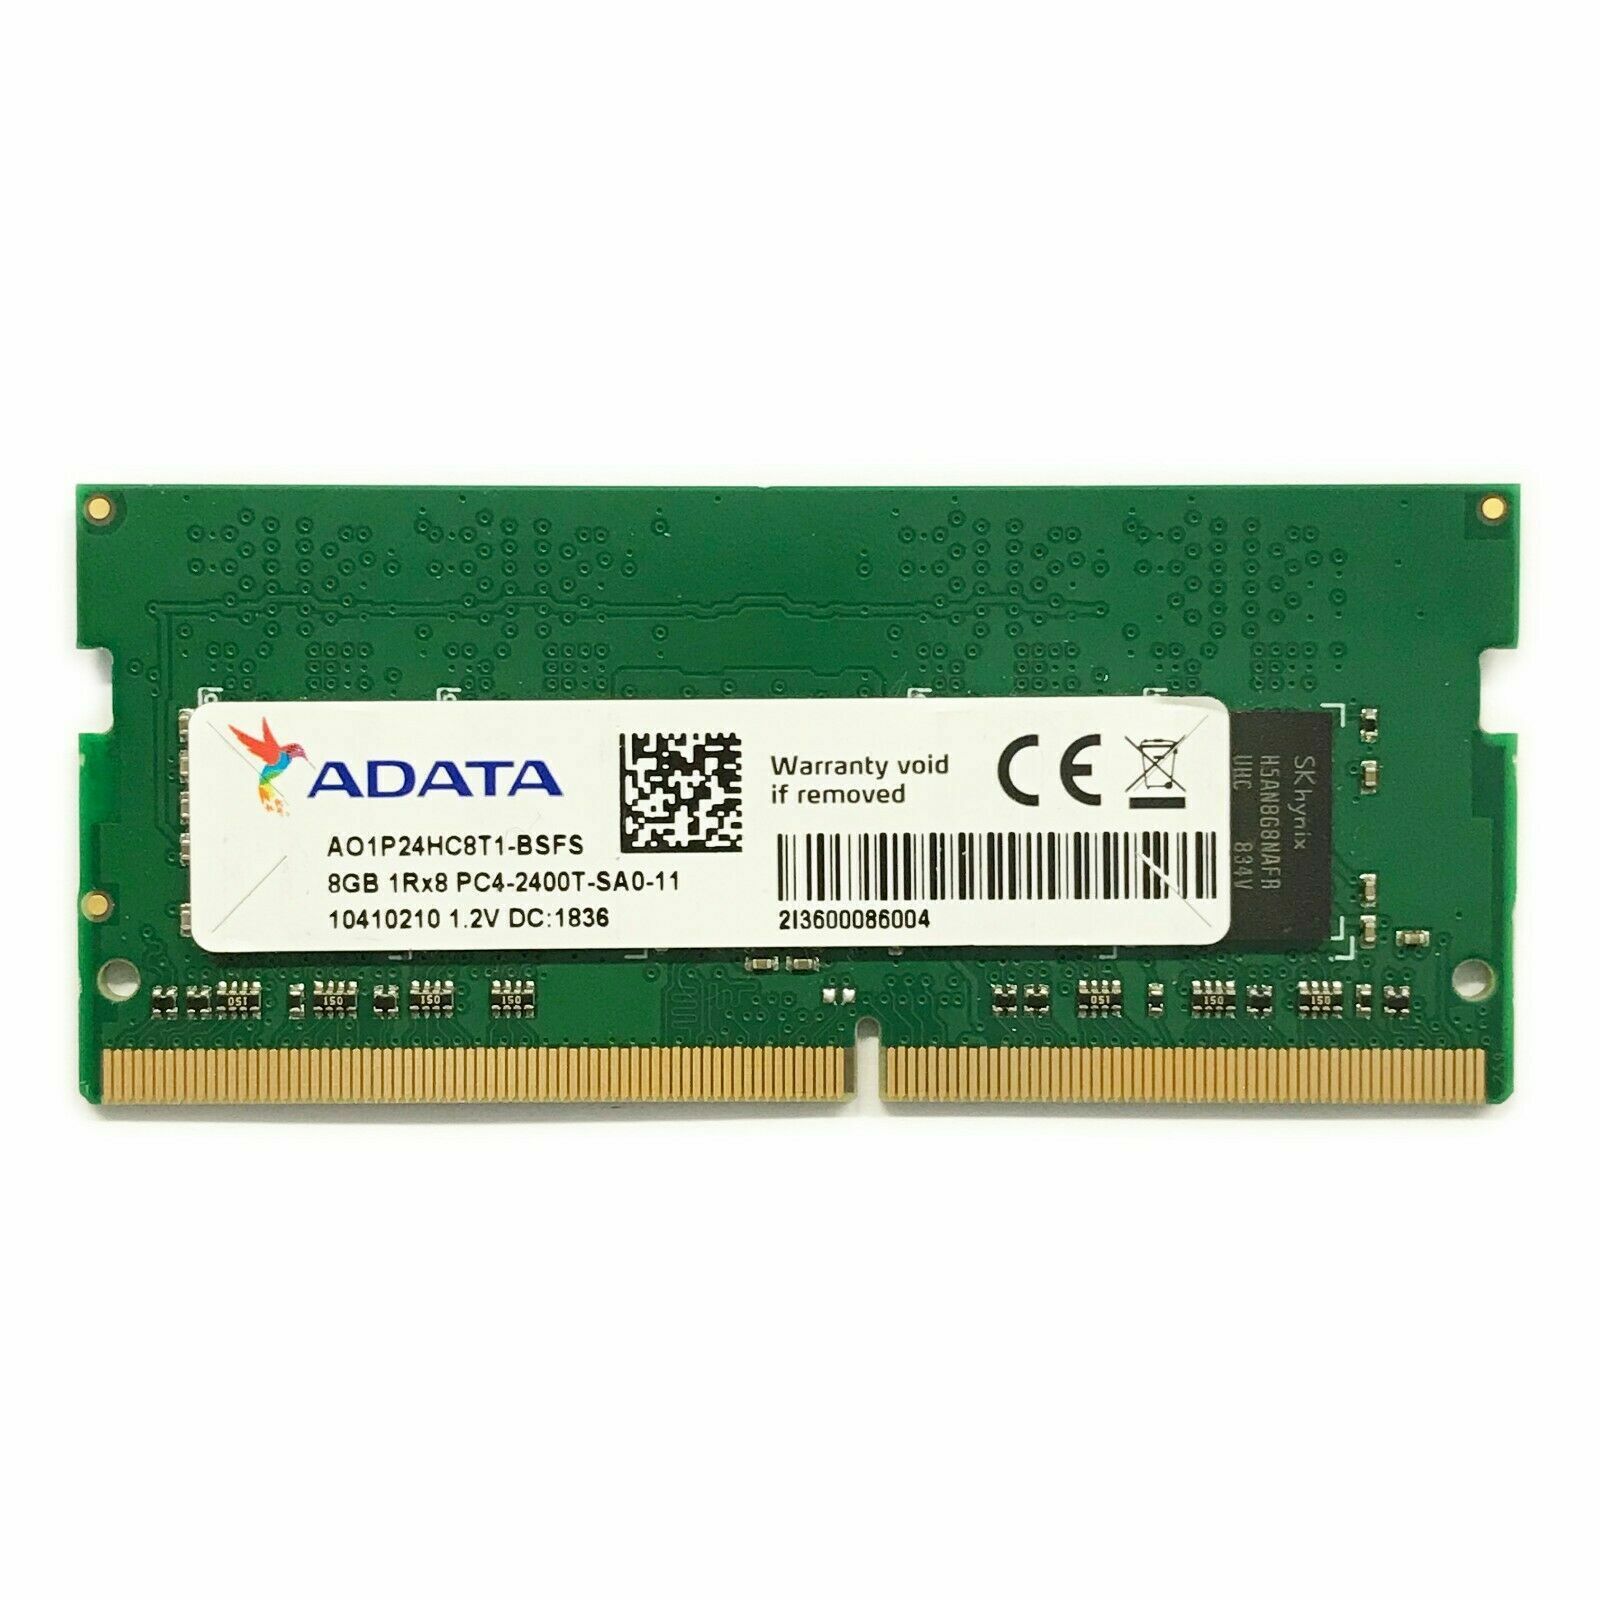 ADATA 8GB 1Rx8 PC4-2400T-SA0-11 DDR4 SODIMM SDRAM RAM AO1P24HC8T1-BSFS